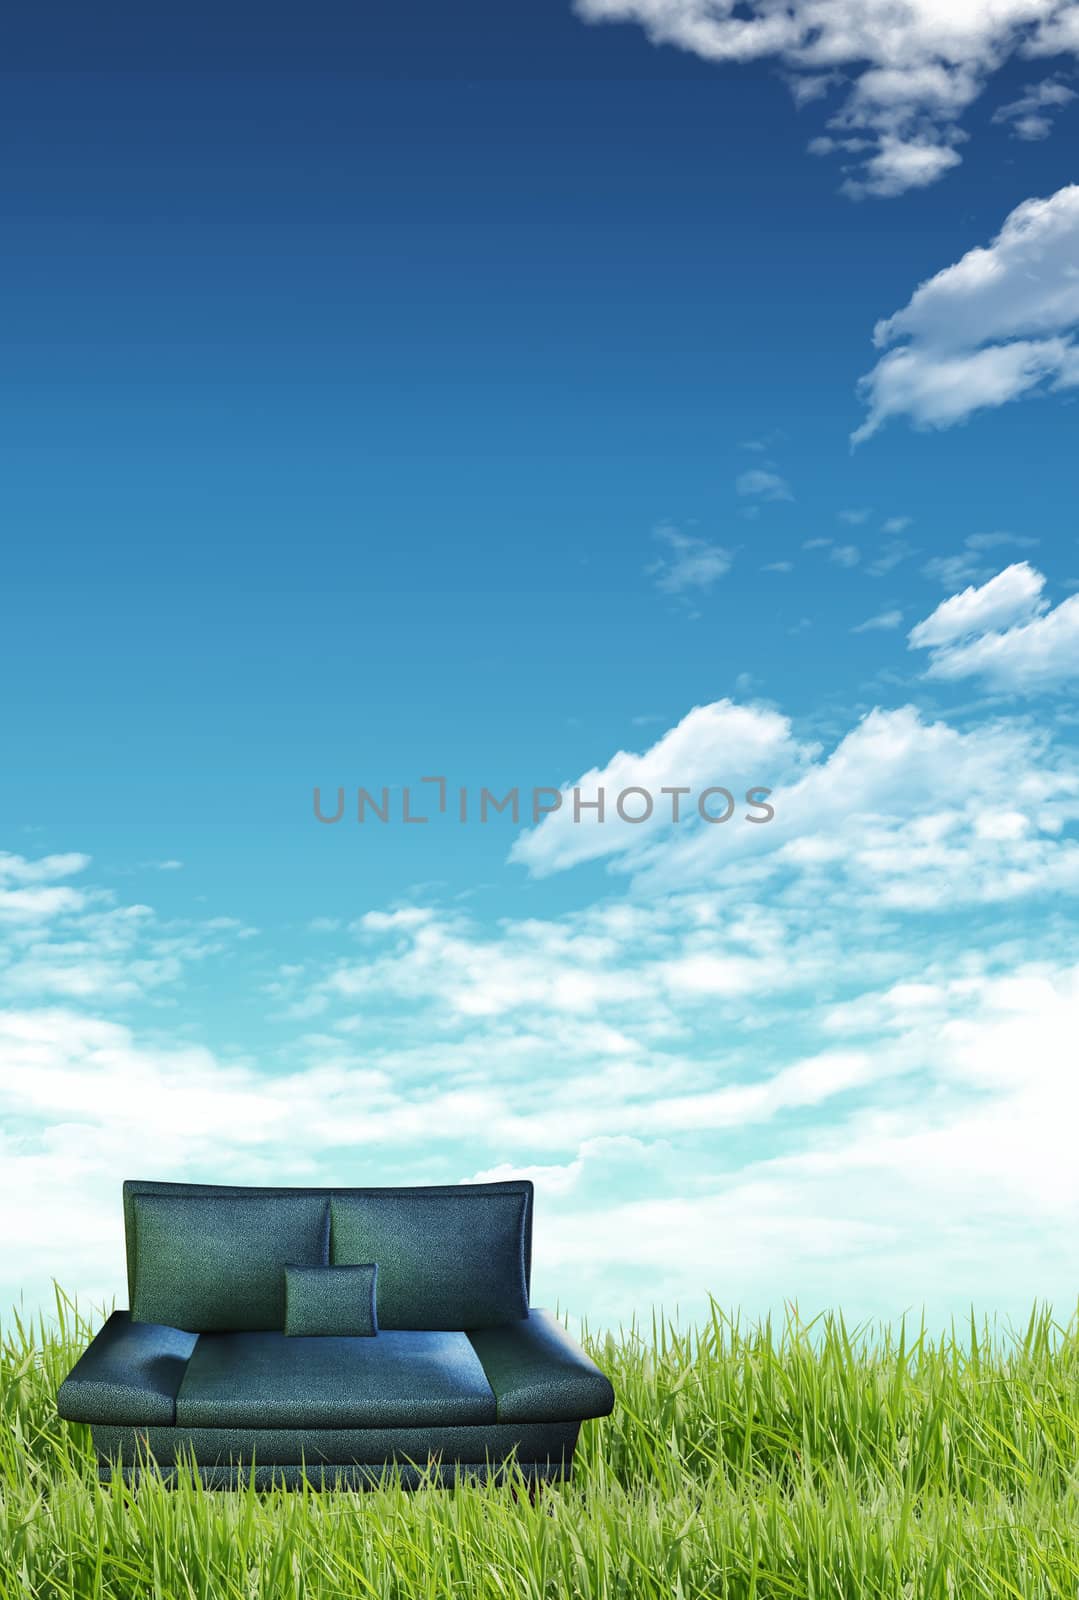 Green grass, blue sky and a sofa